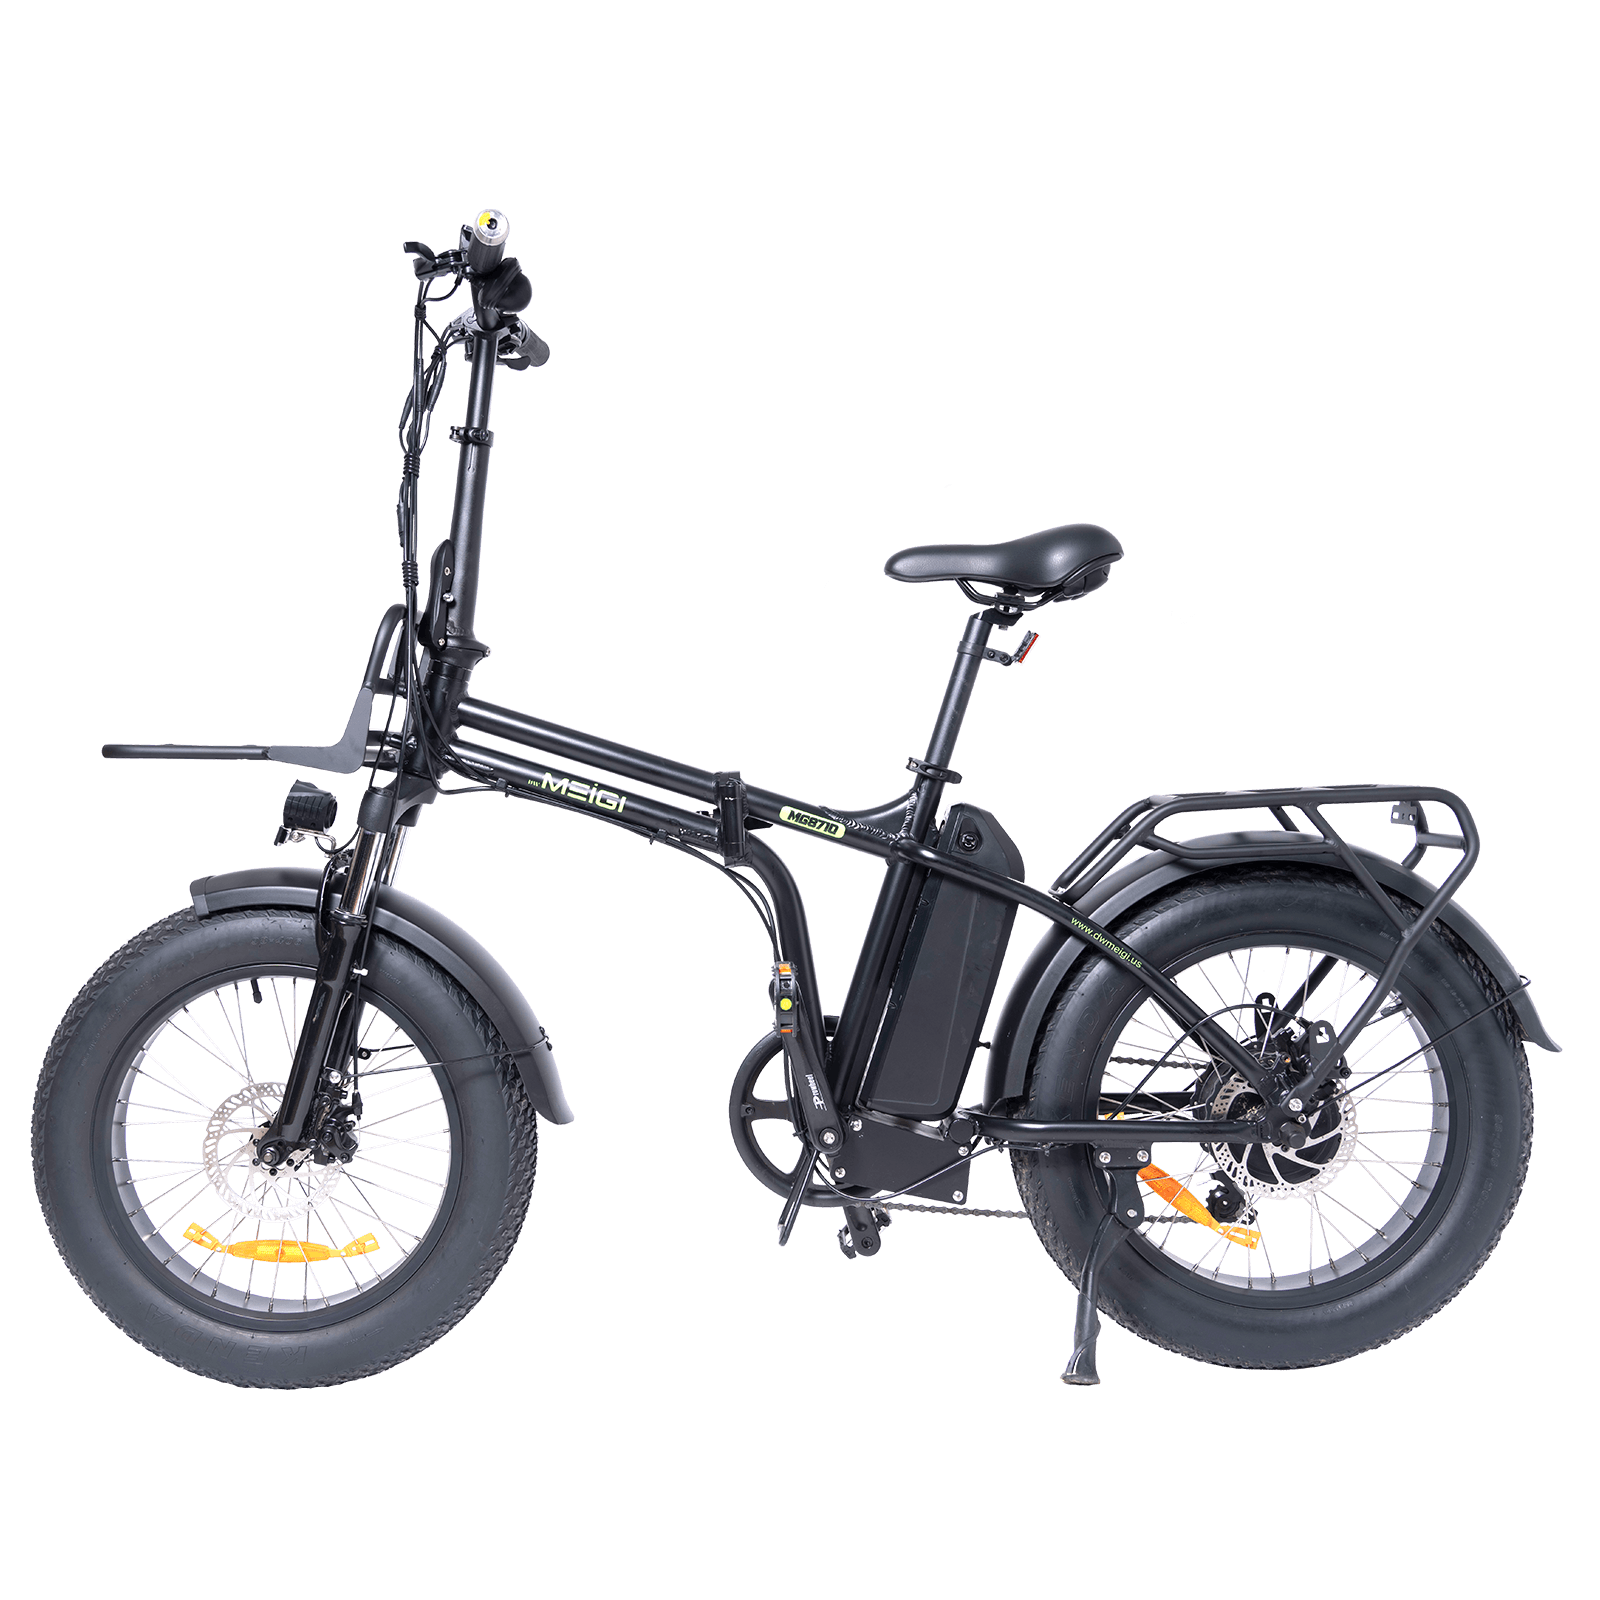 MG8710 Folding Fat Tire Electric Bike - DWMEIGI